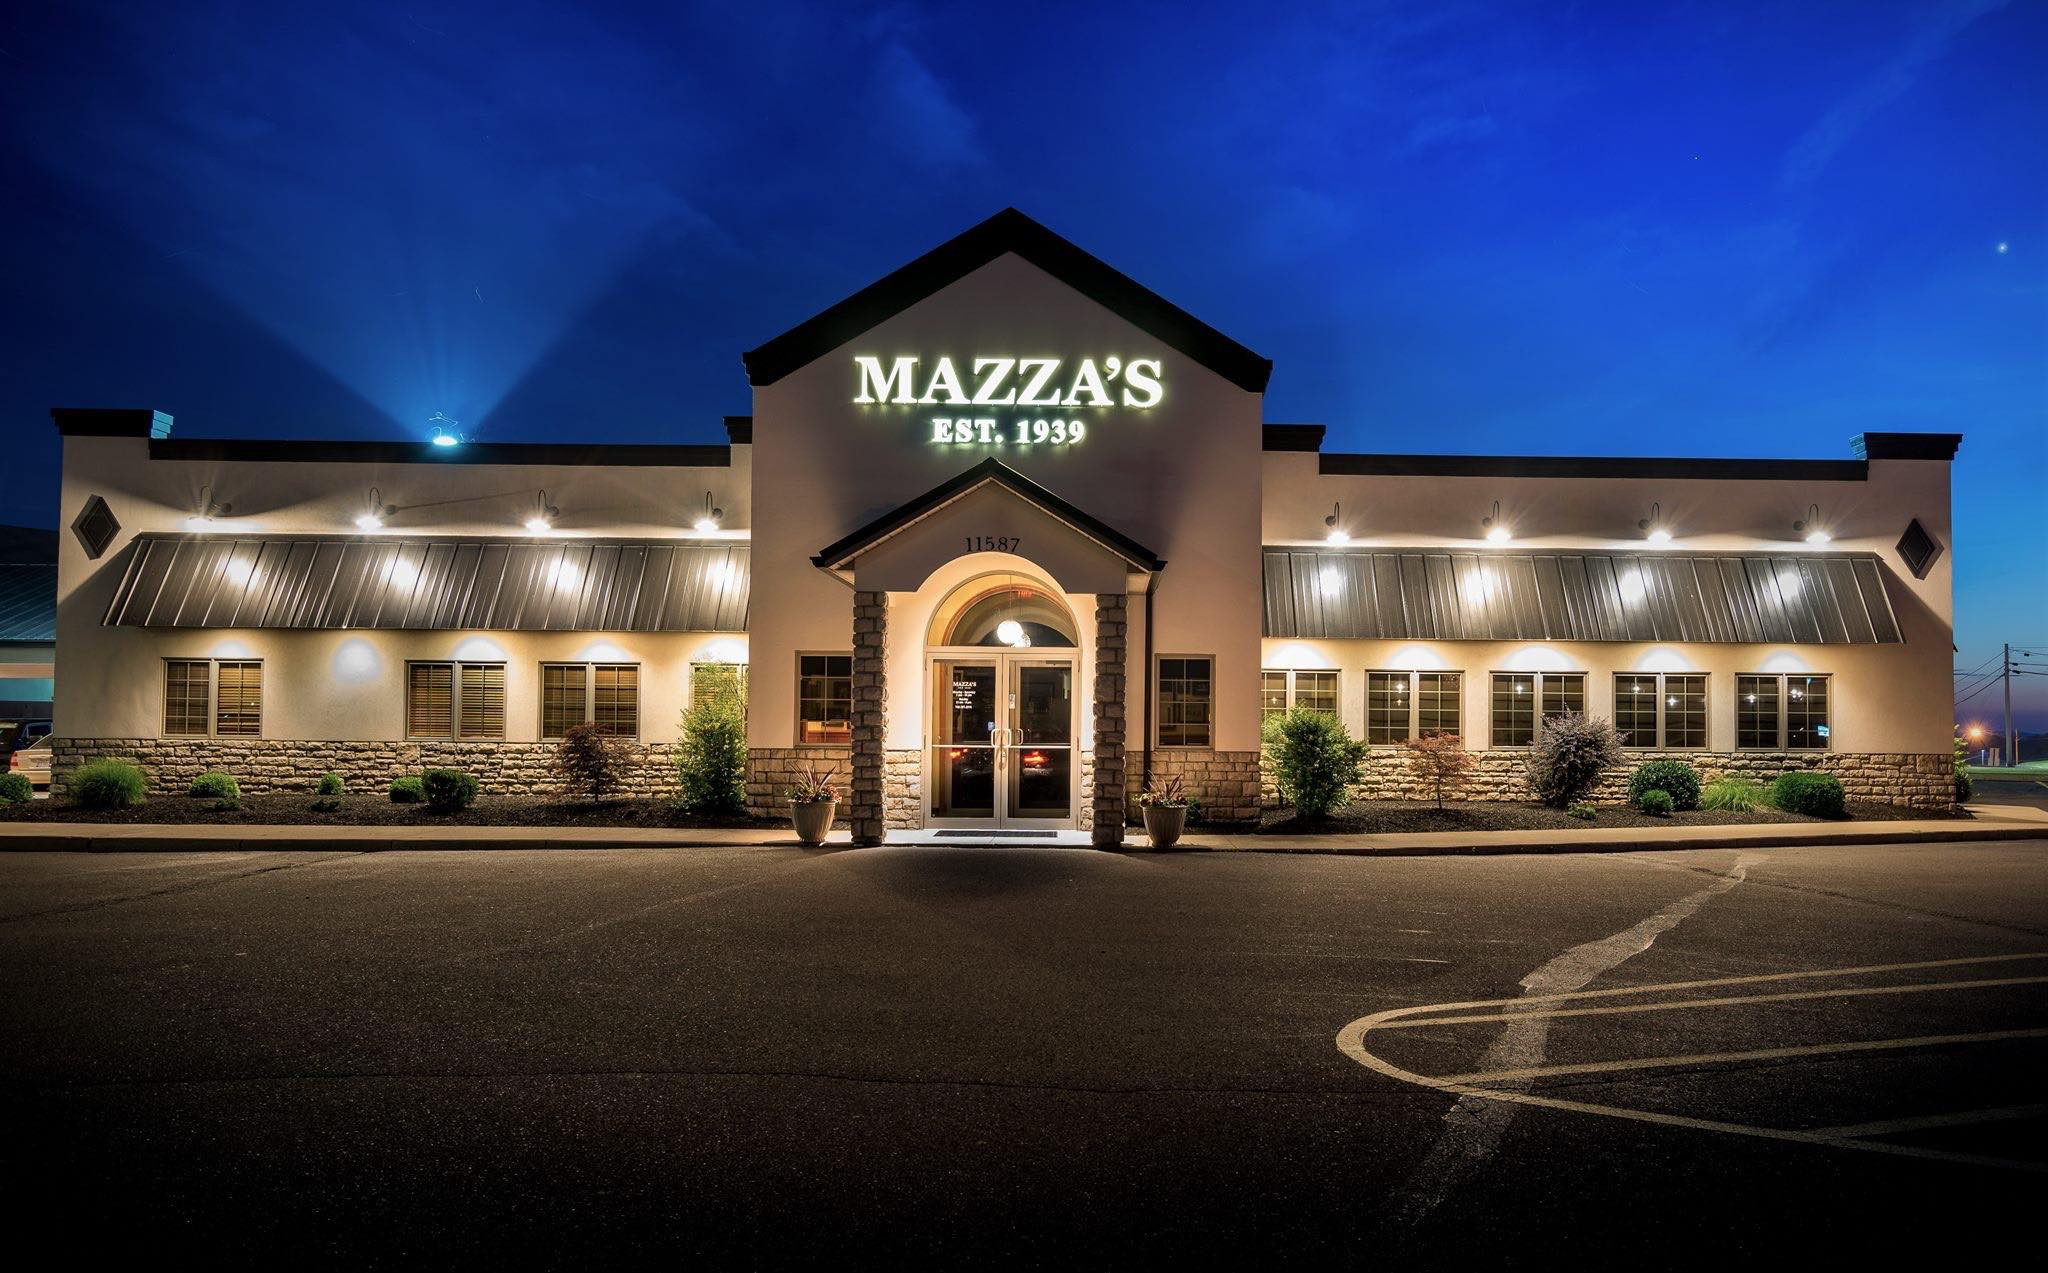 Mazza's